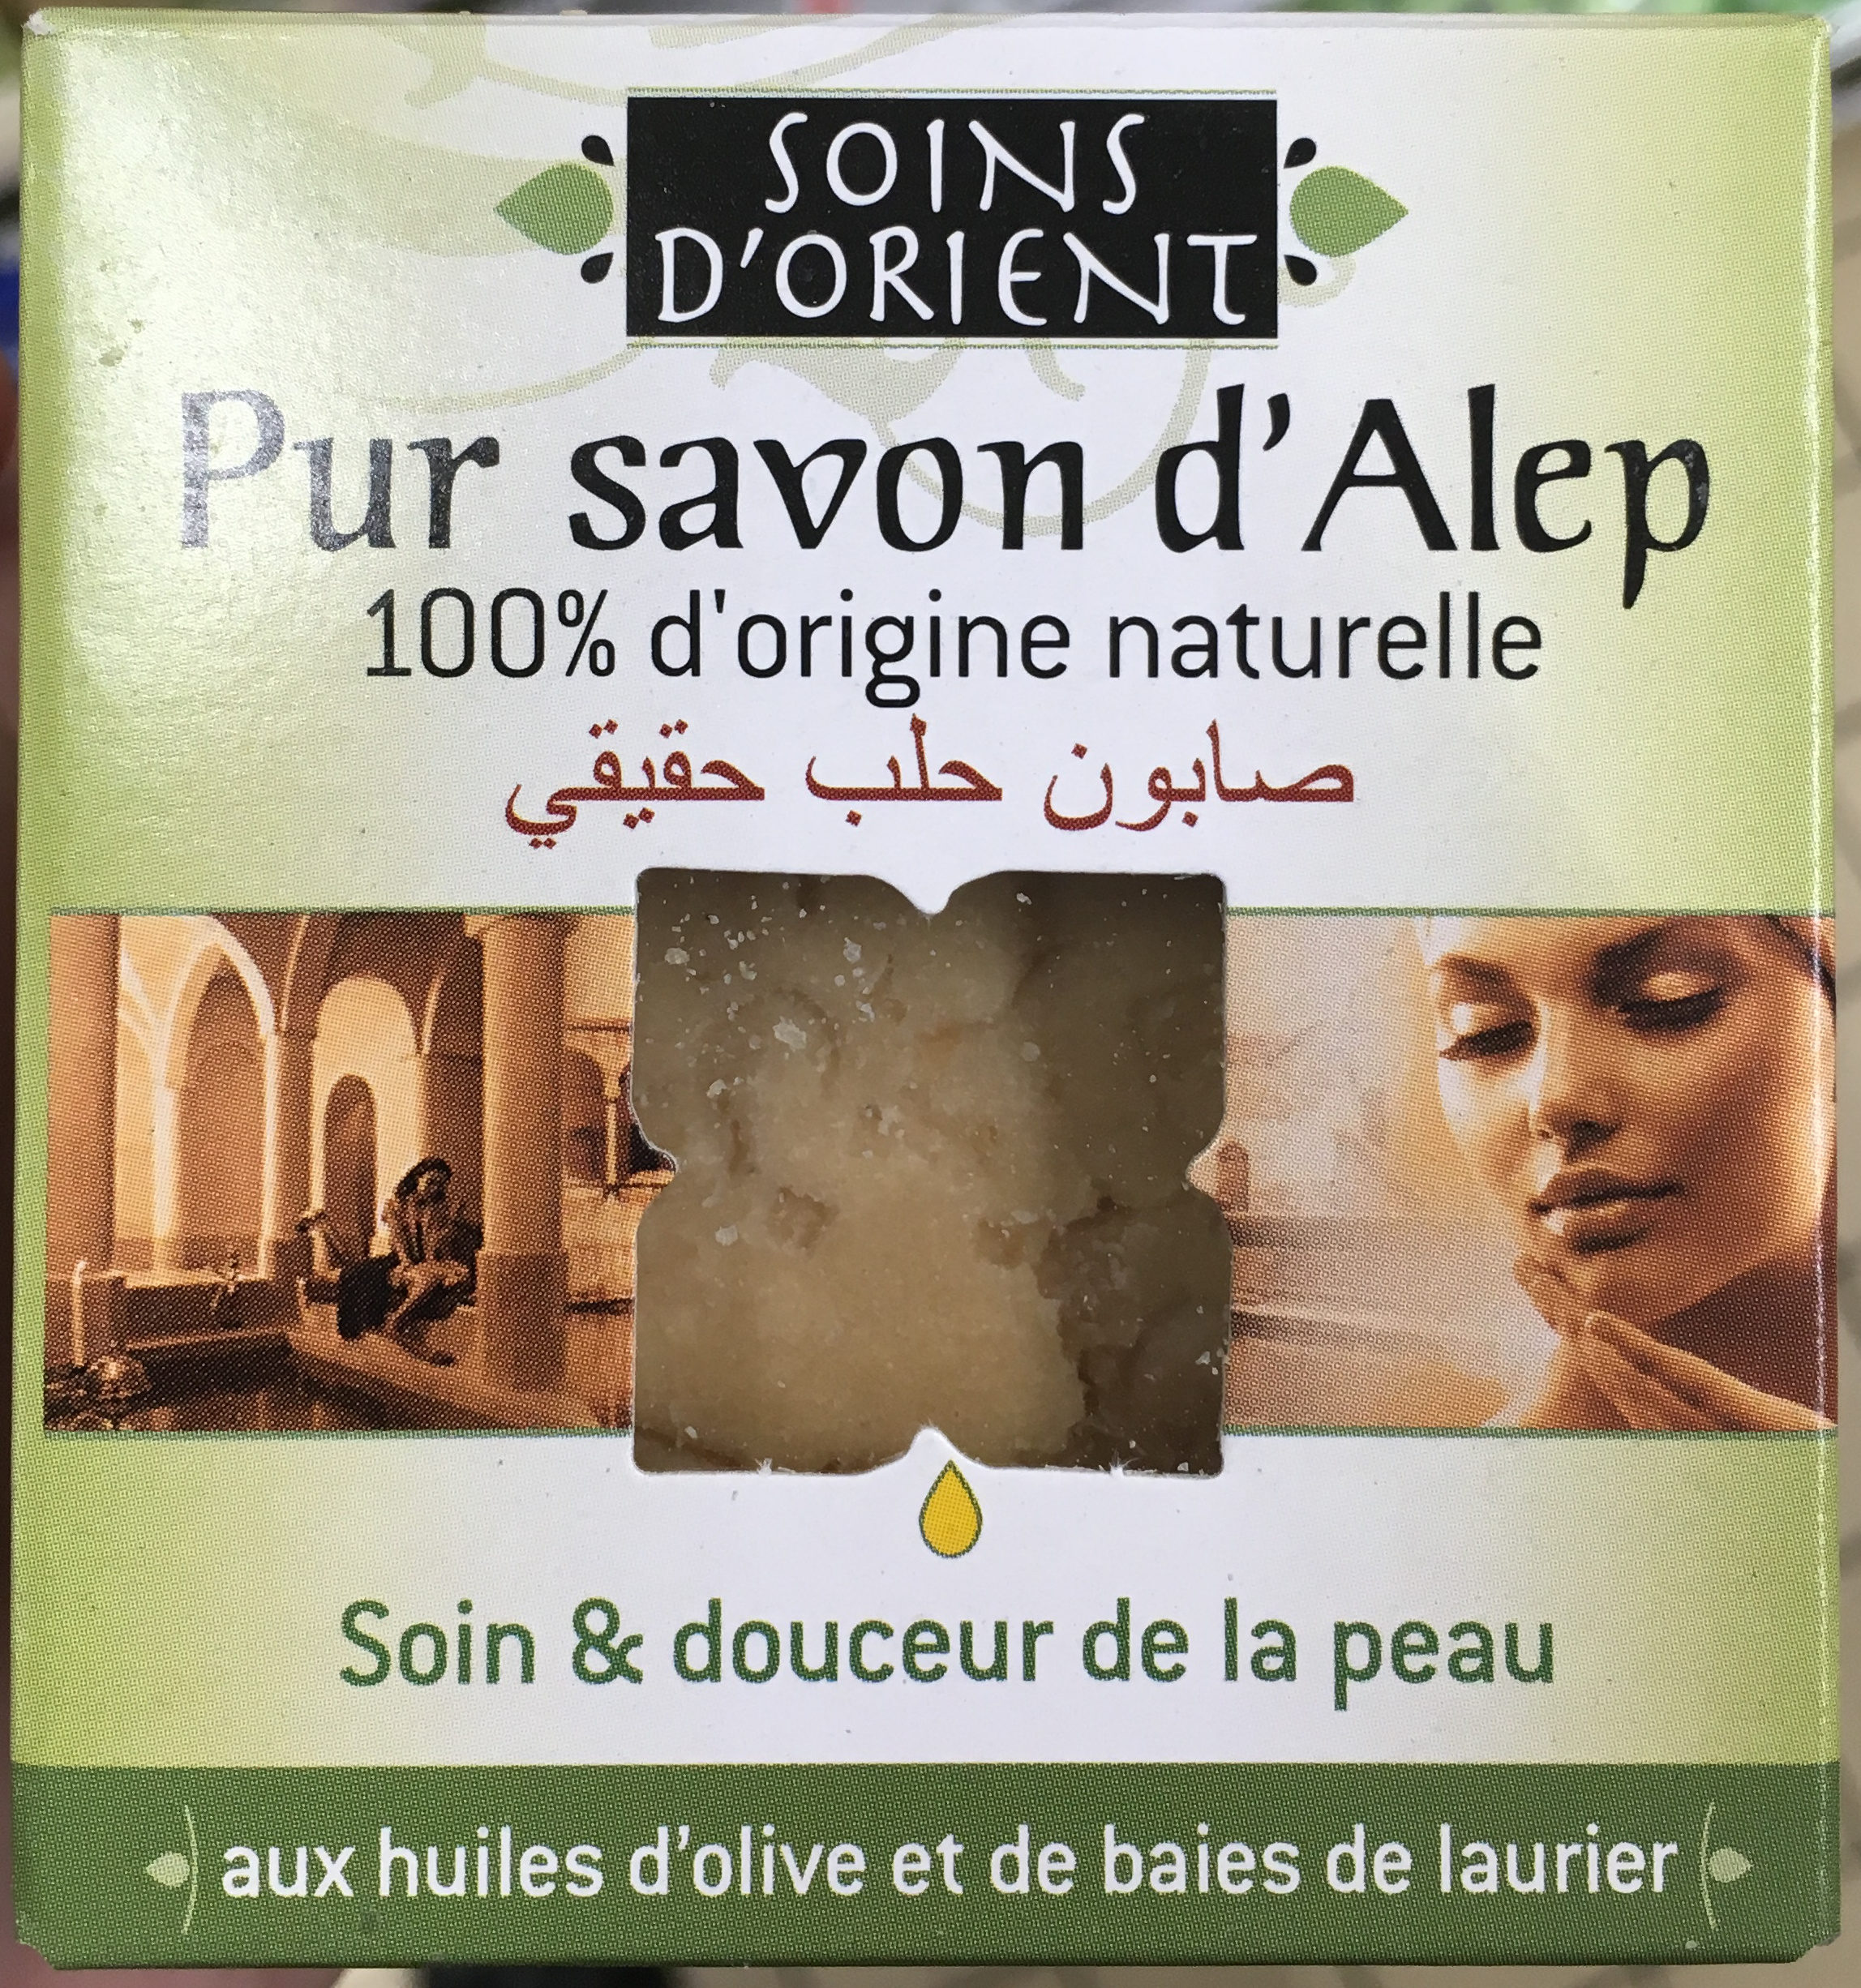 Pur savon d'Alep - Produit - fr